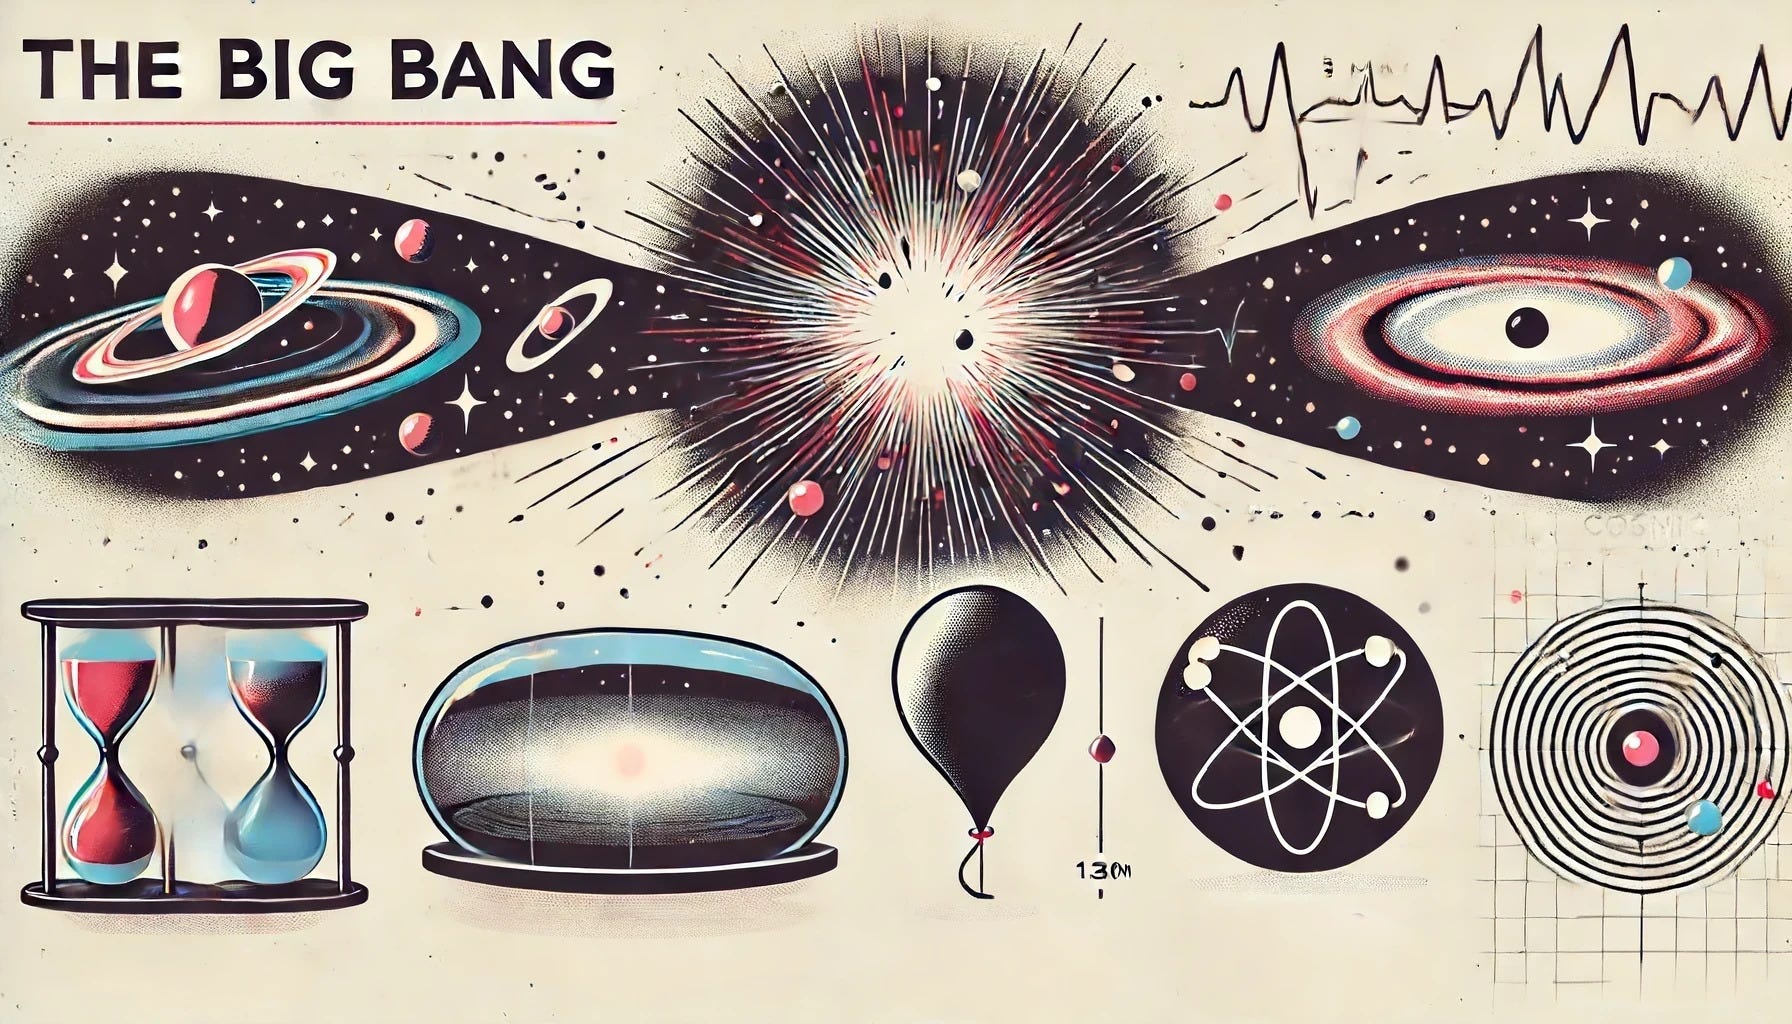 Pillars of evidence for the Big Bang